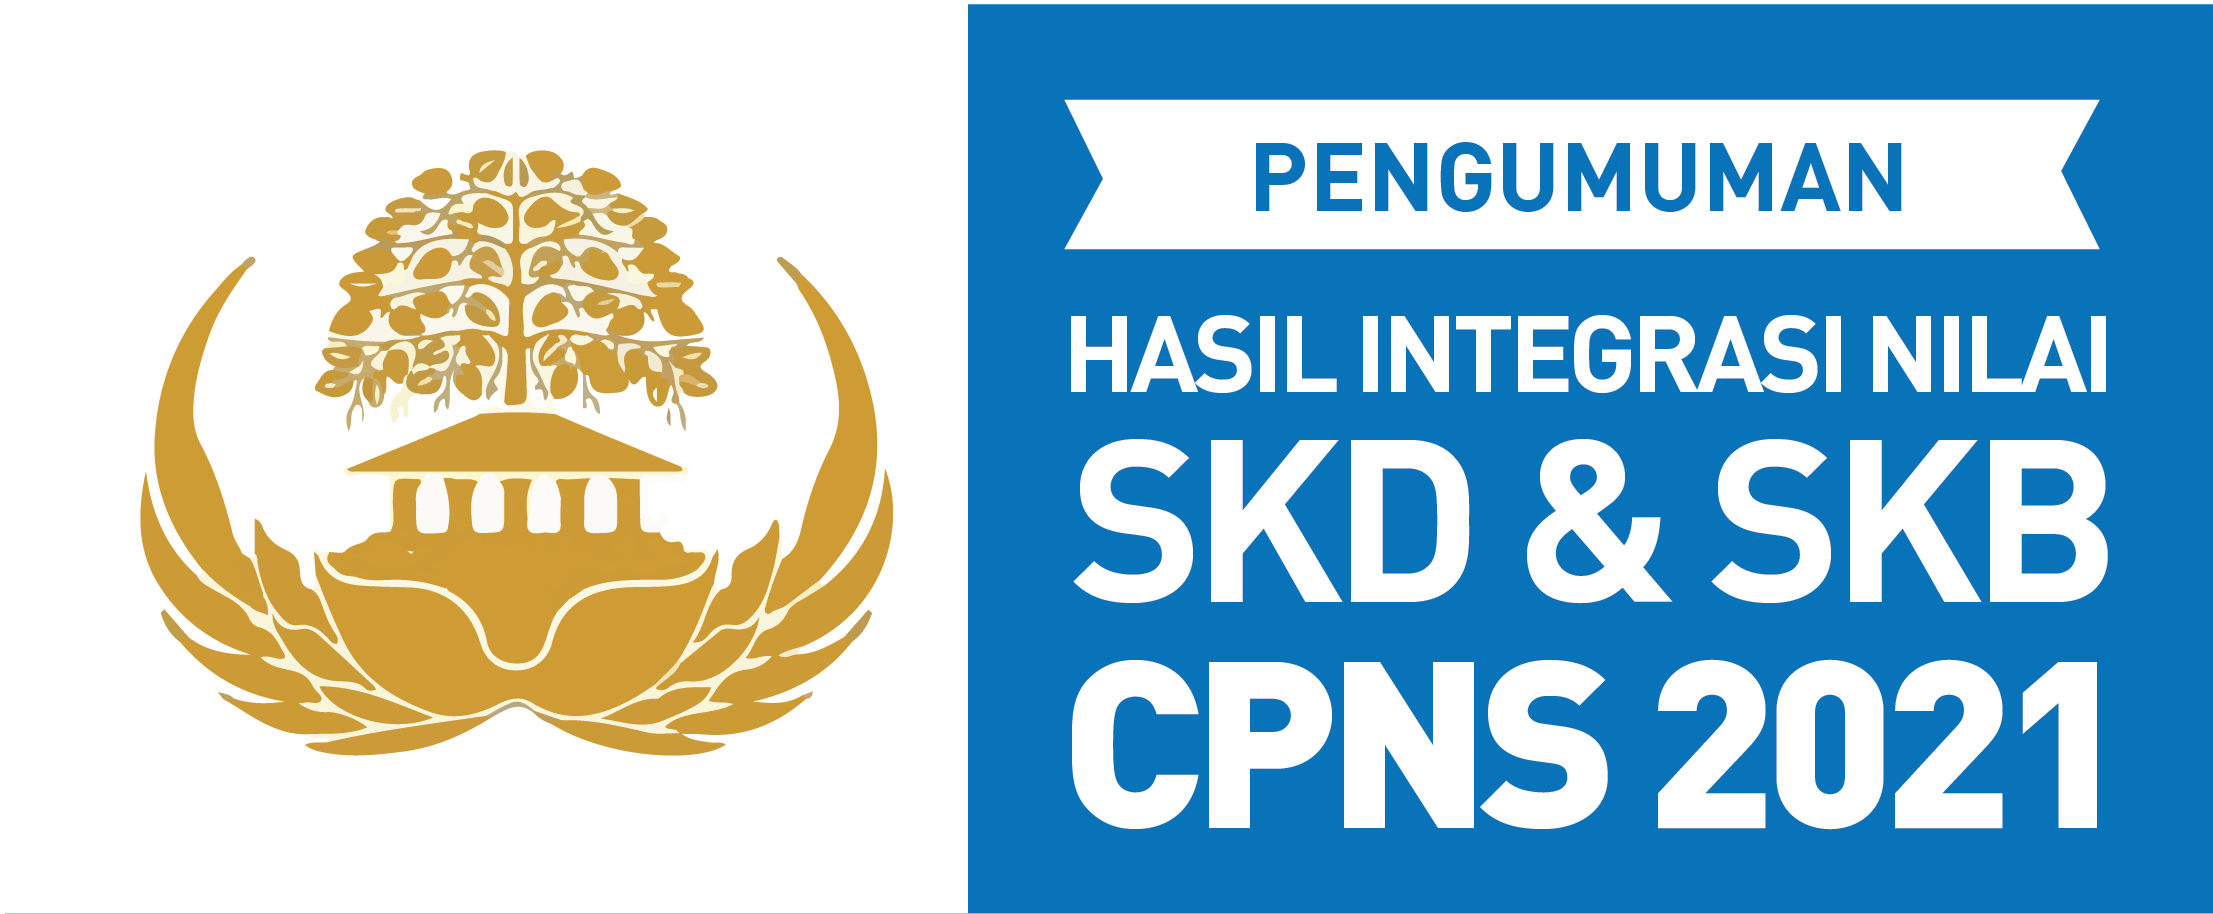 PENGUMUMAN HASIL INTEGRASI NILAI SKD & SKB CPNS 2021 (PRA SANGGAH)